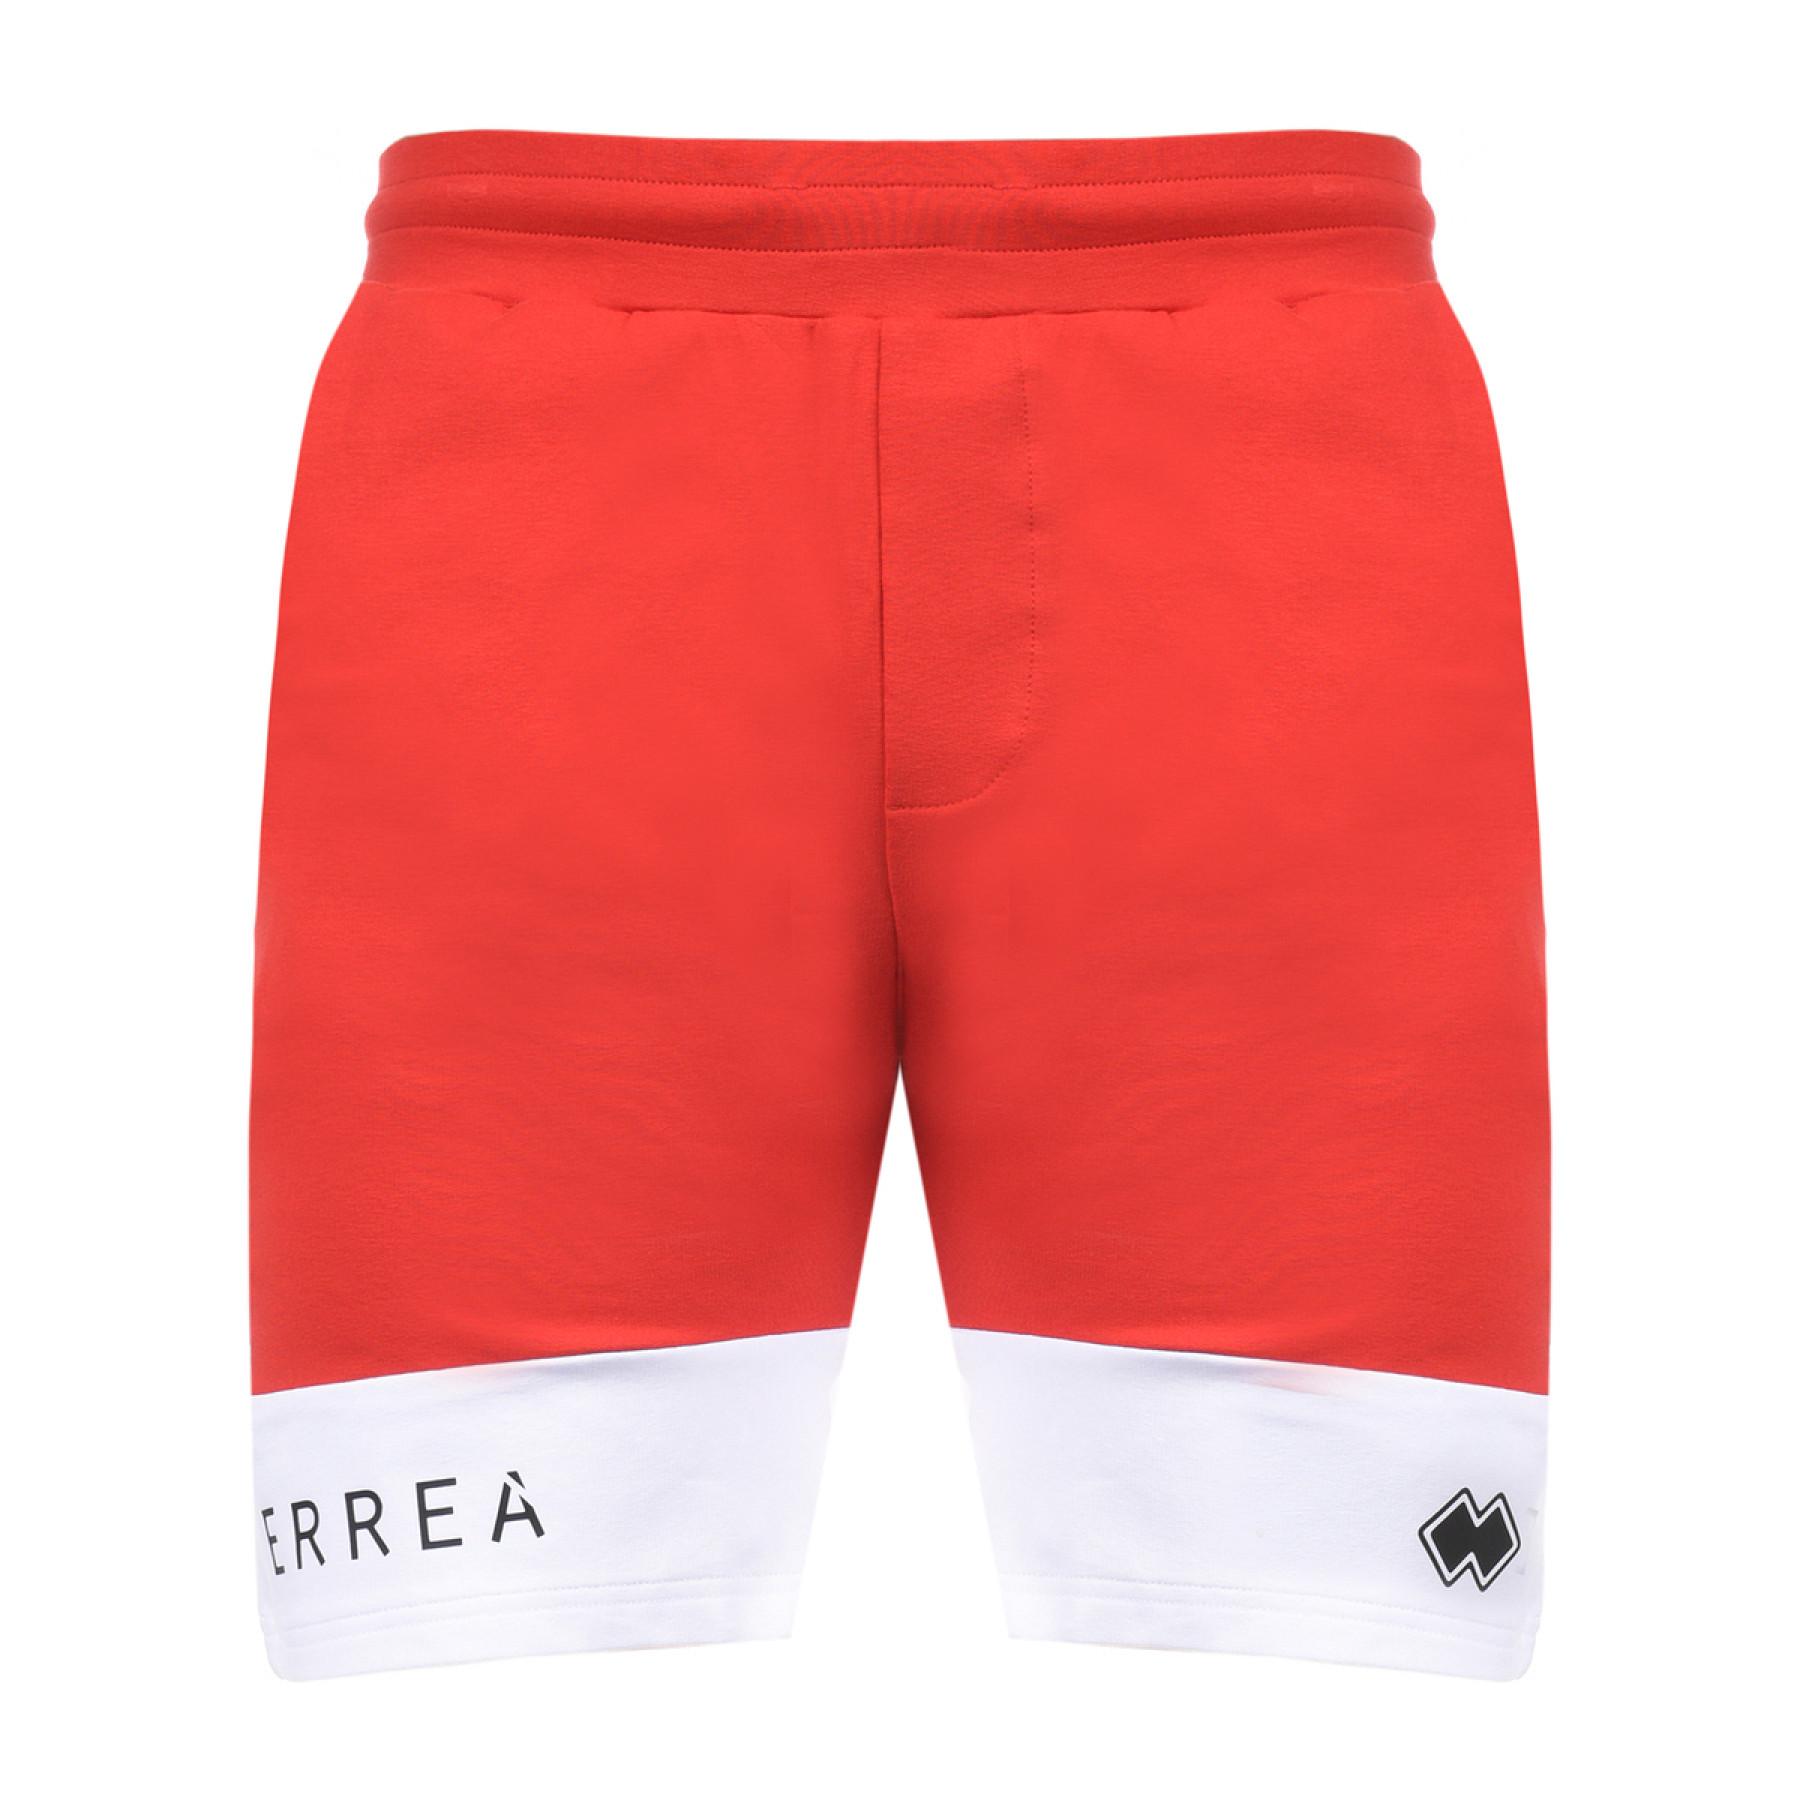 Bermuda shorts Errea trend